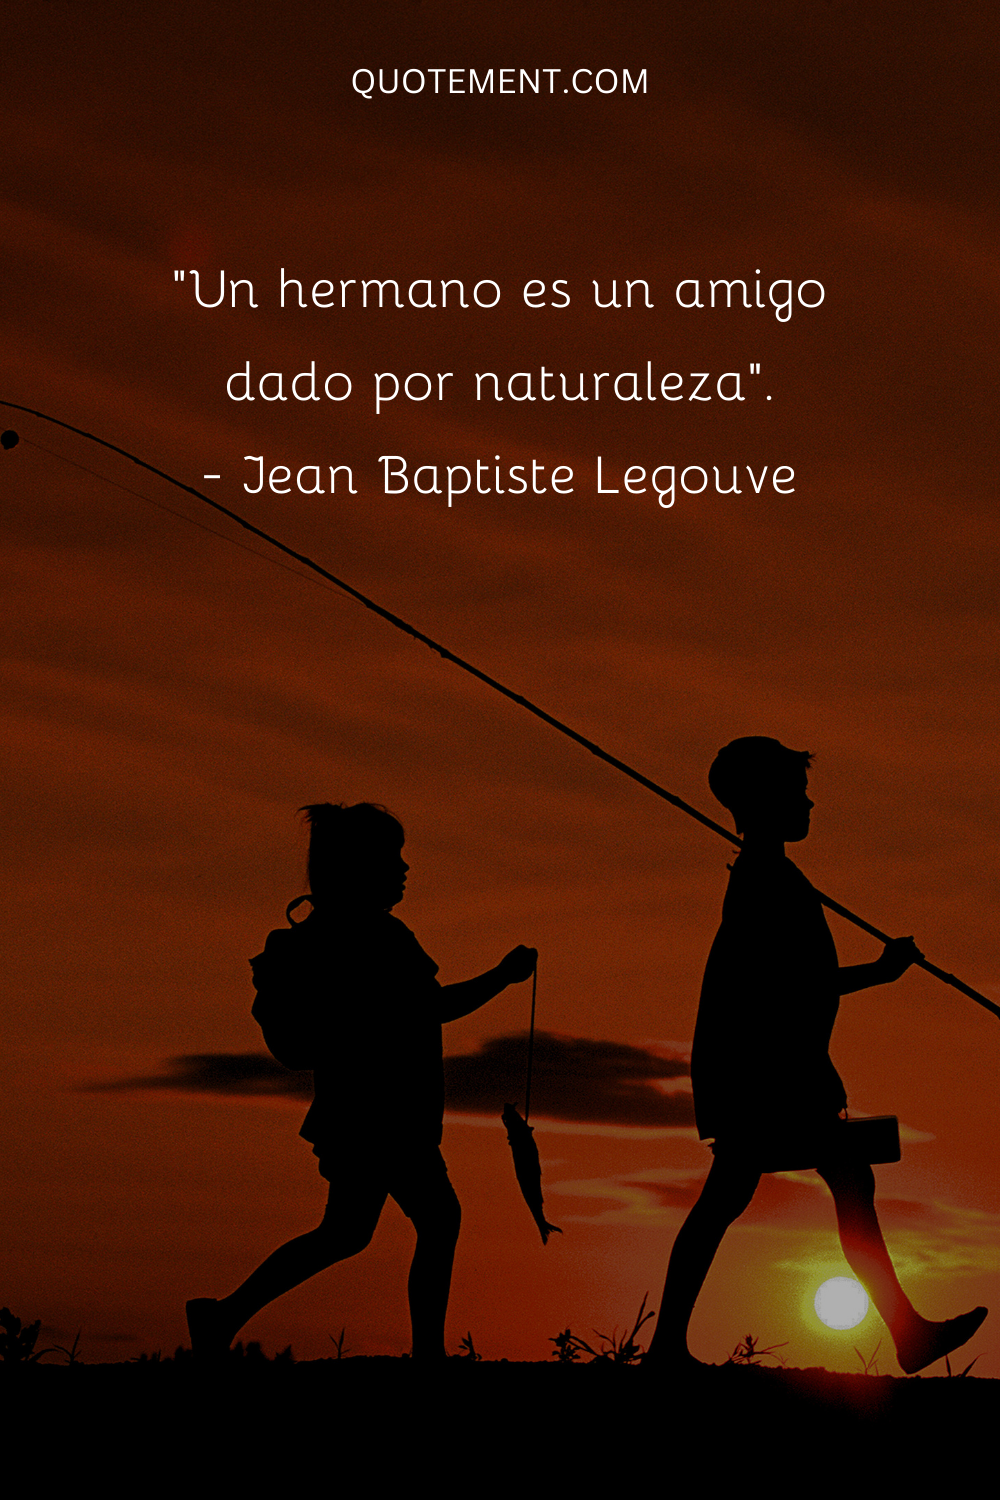 "Un hermano es un amigo dado por la naturaleza". - Jean Baptiste Legouve